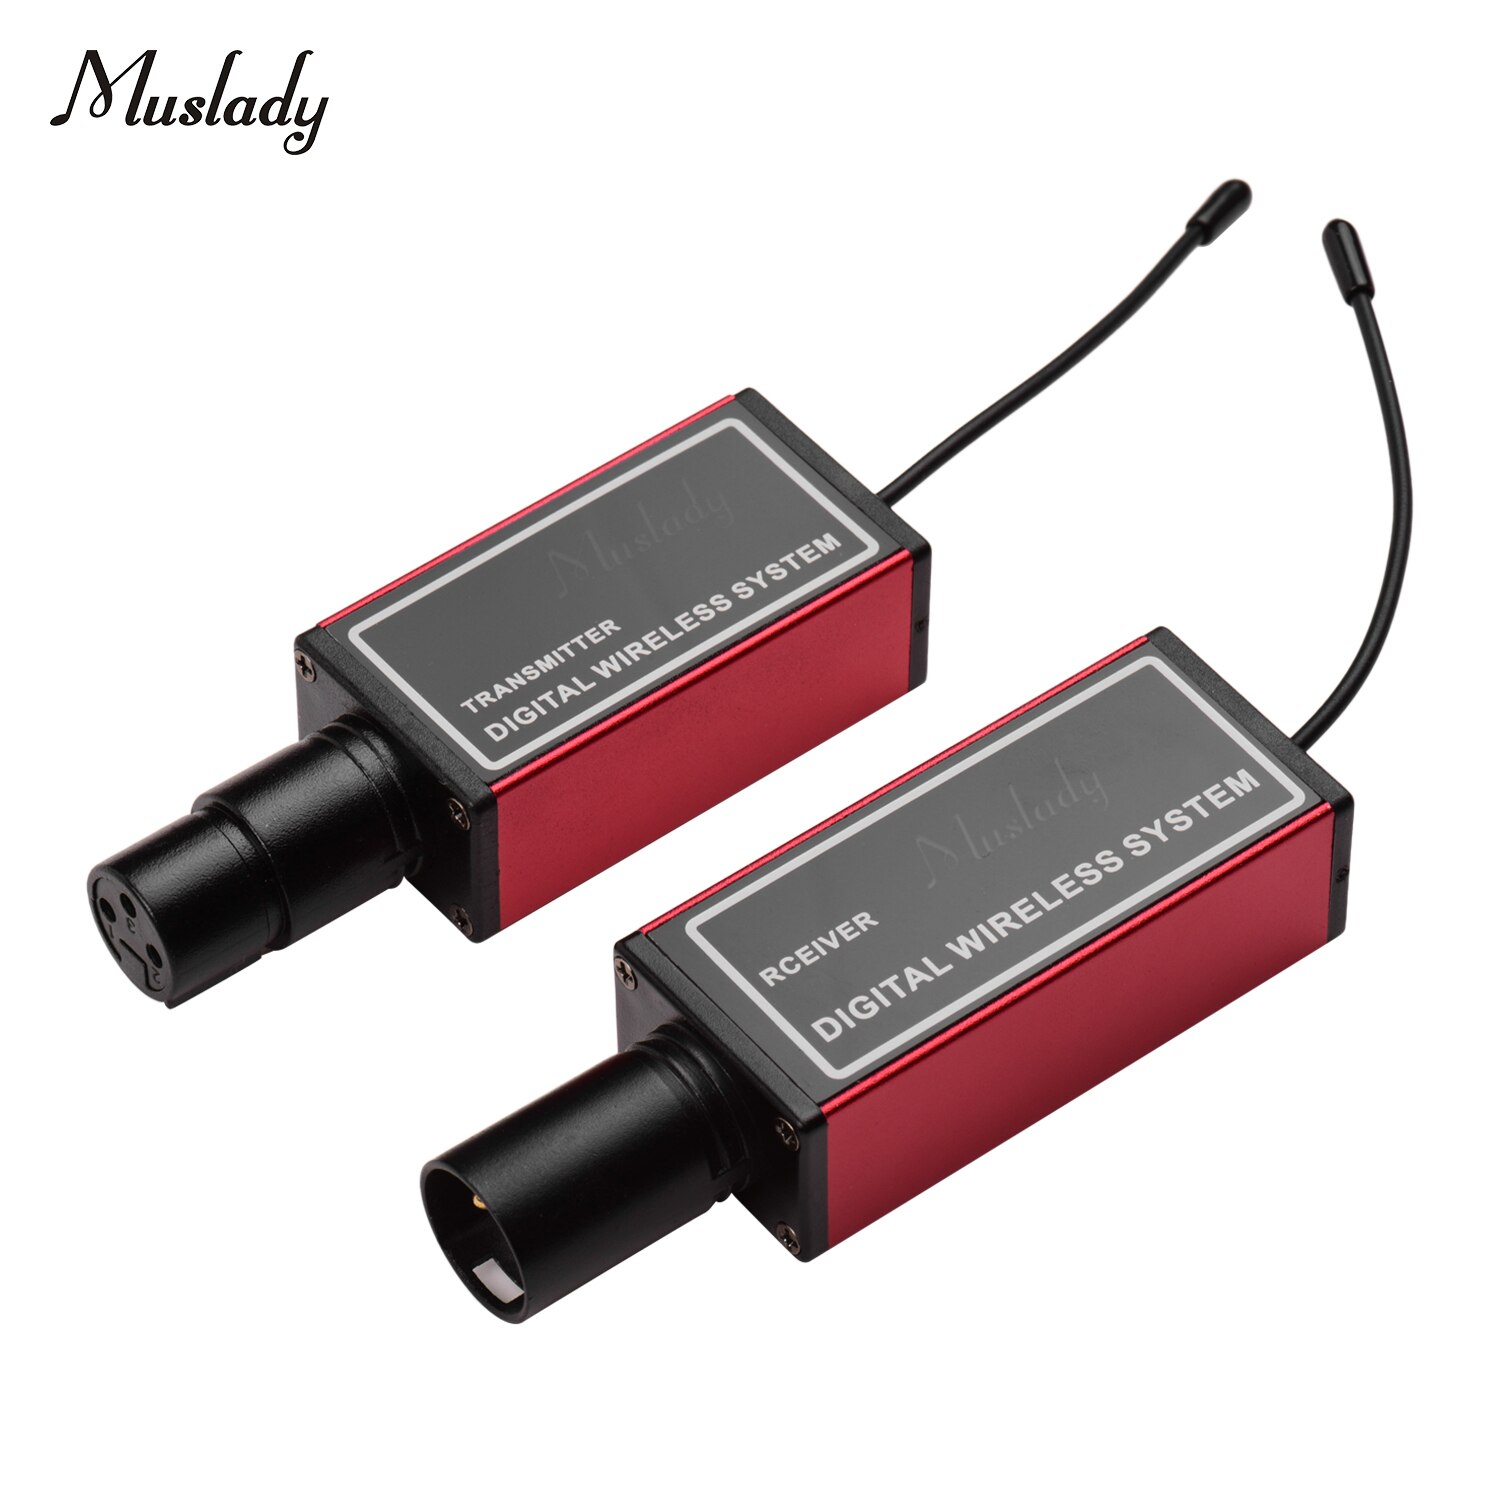 Muslady ur -4 digitalt trådløst mikrofonsystem med xlr transmitter modtager indbygget lithium batteri tilslut: Rød